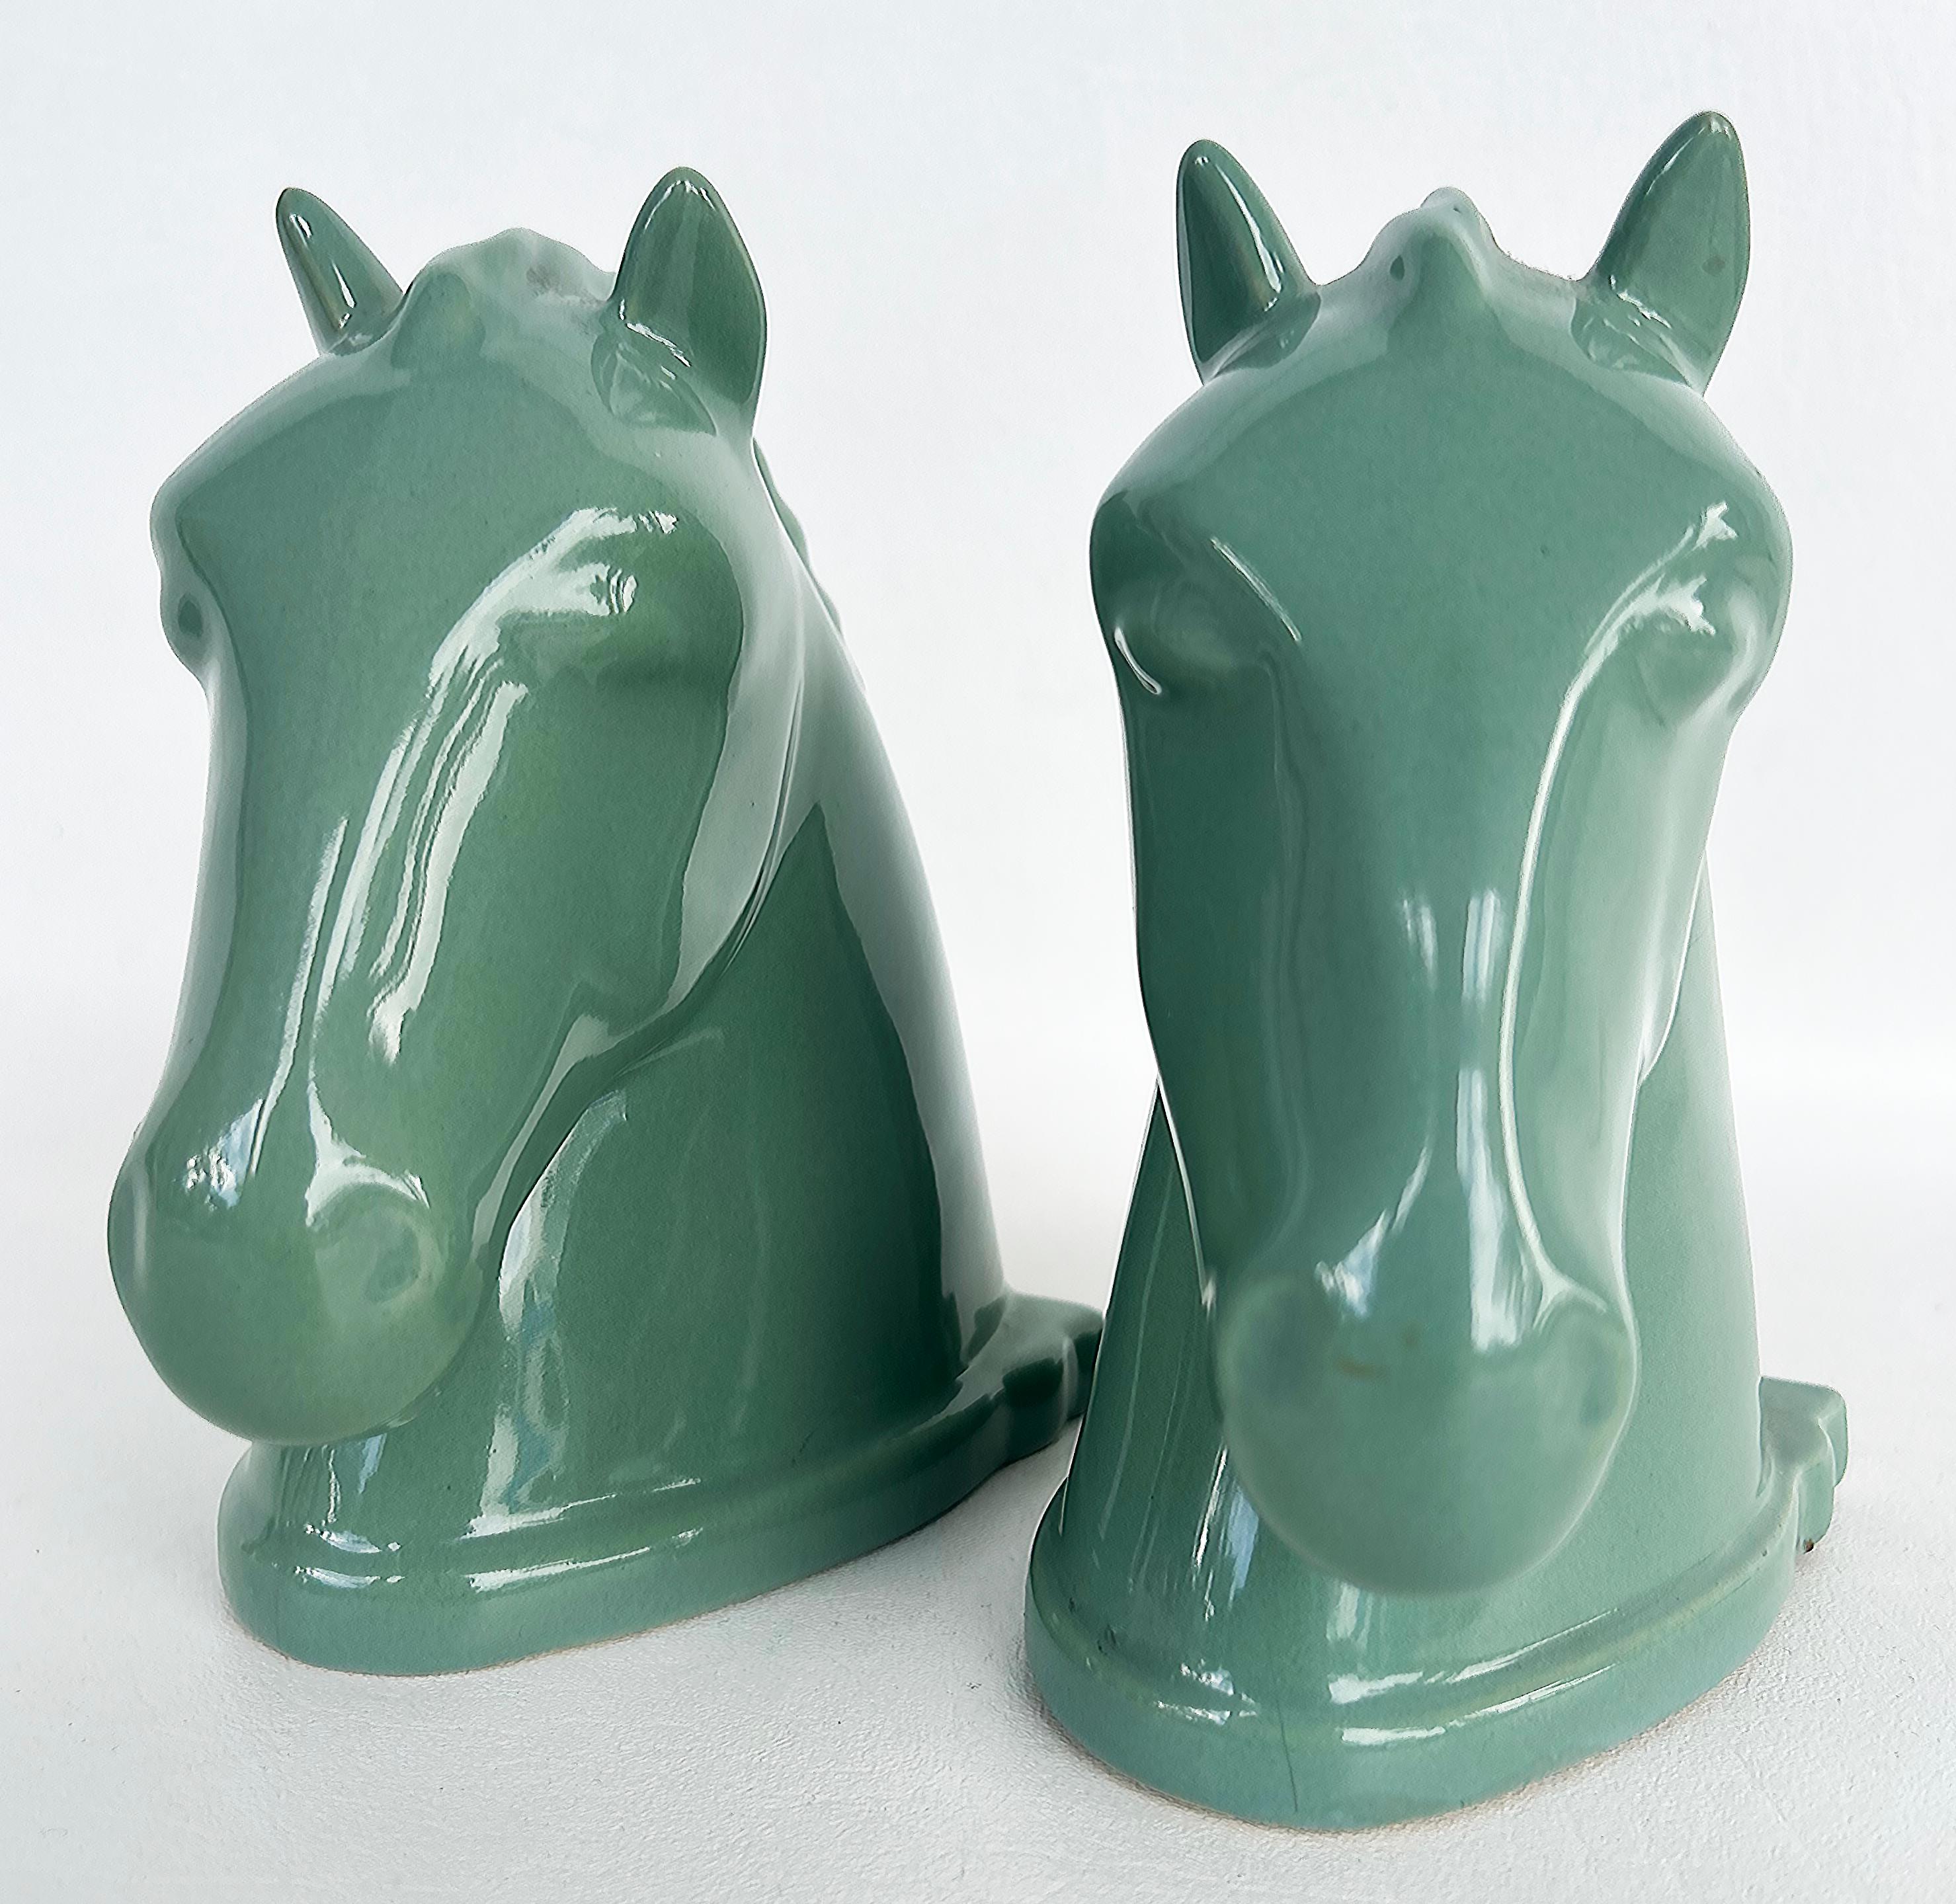 Vintage Abingdon USA Keramik Pferdekopf Buchstützen mit Labels, Paar 

Zum Verkauf angeboten wird ein Paar von erheblichen frühen Mid-Century Keramik Pferd Buchstützen aus Abingdon Pottery. Die Pferde sind grün glasiert, eine für Abingdon